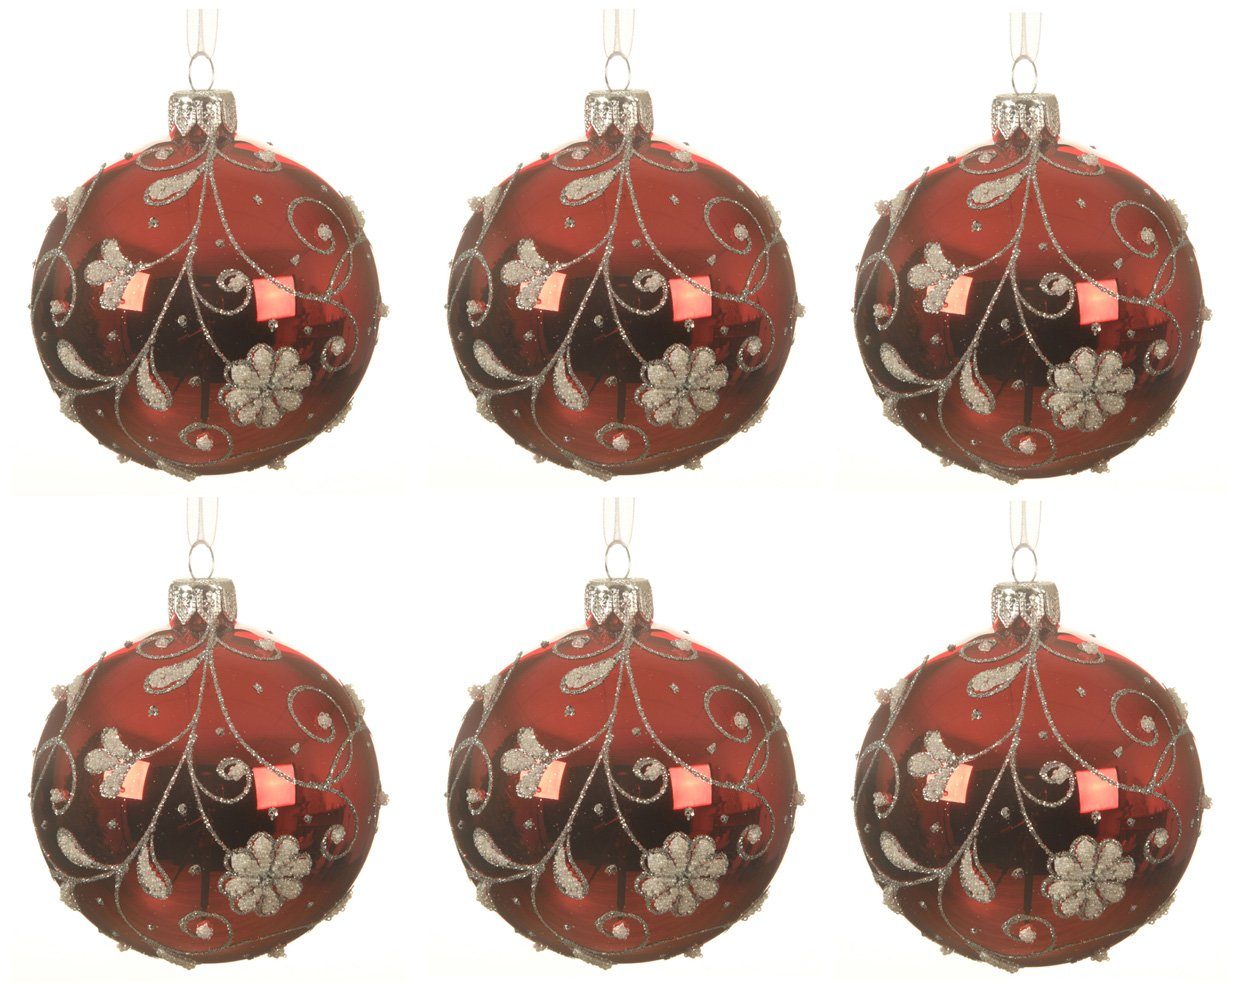 Decoris season decorations Weihnachtsbaumkugel, Weihnachtskugeln Glas 8cm mit Blumen / Ranken Motiv 6er Set rot